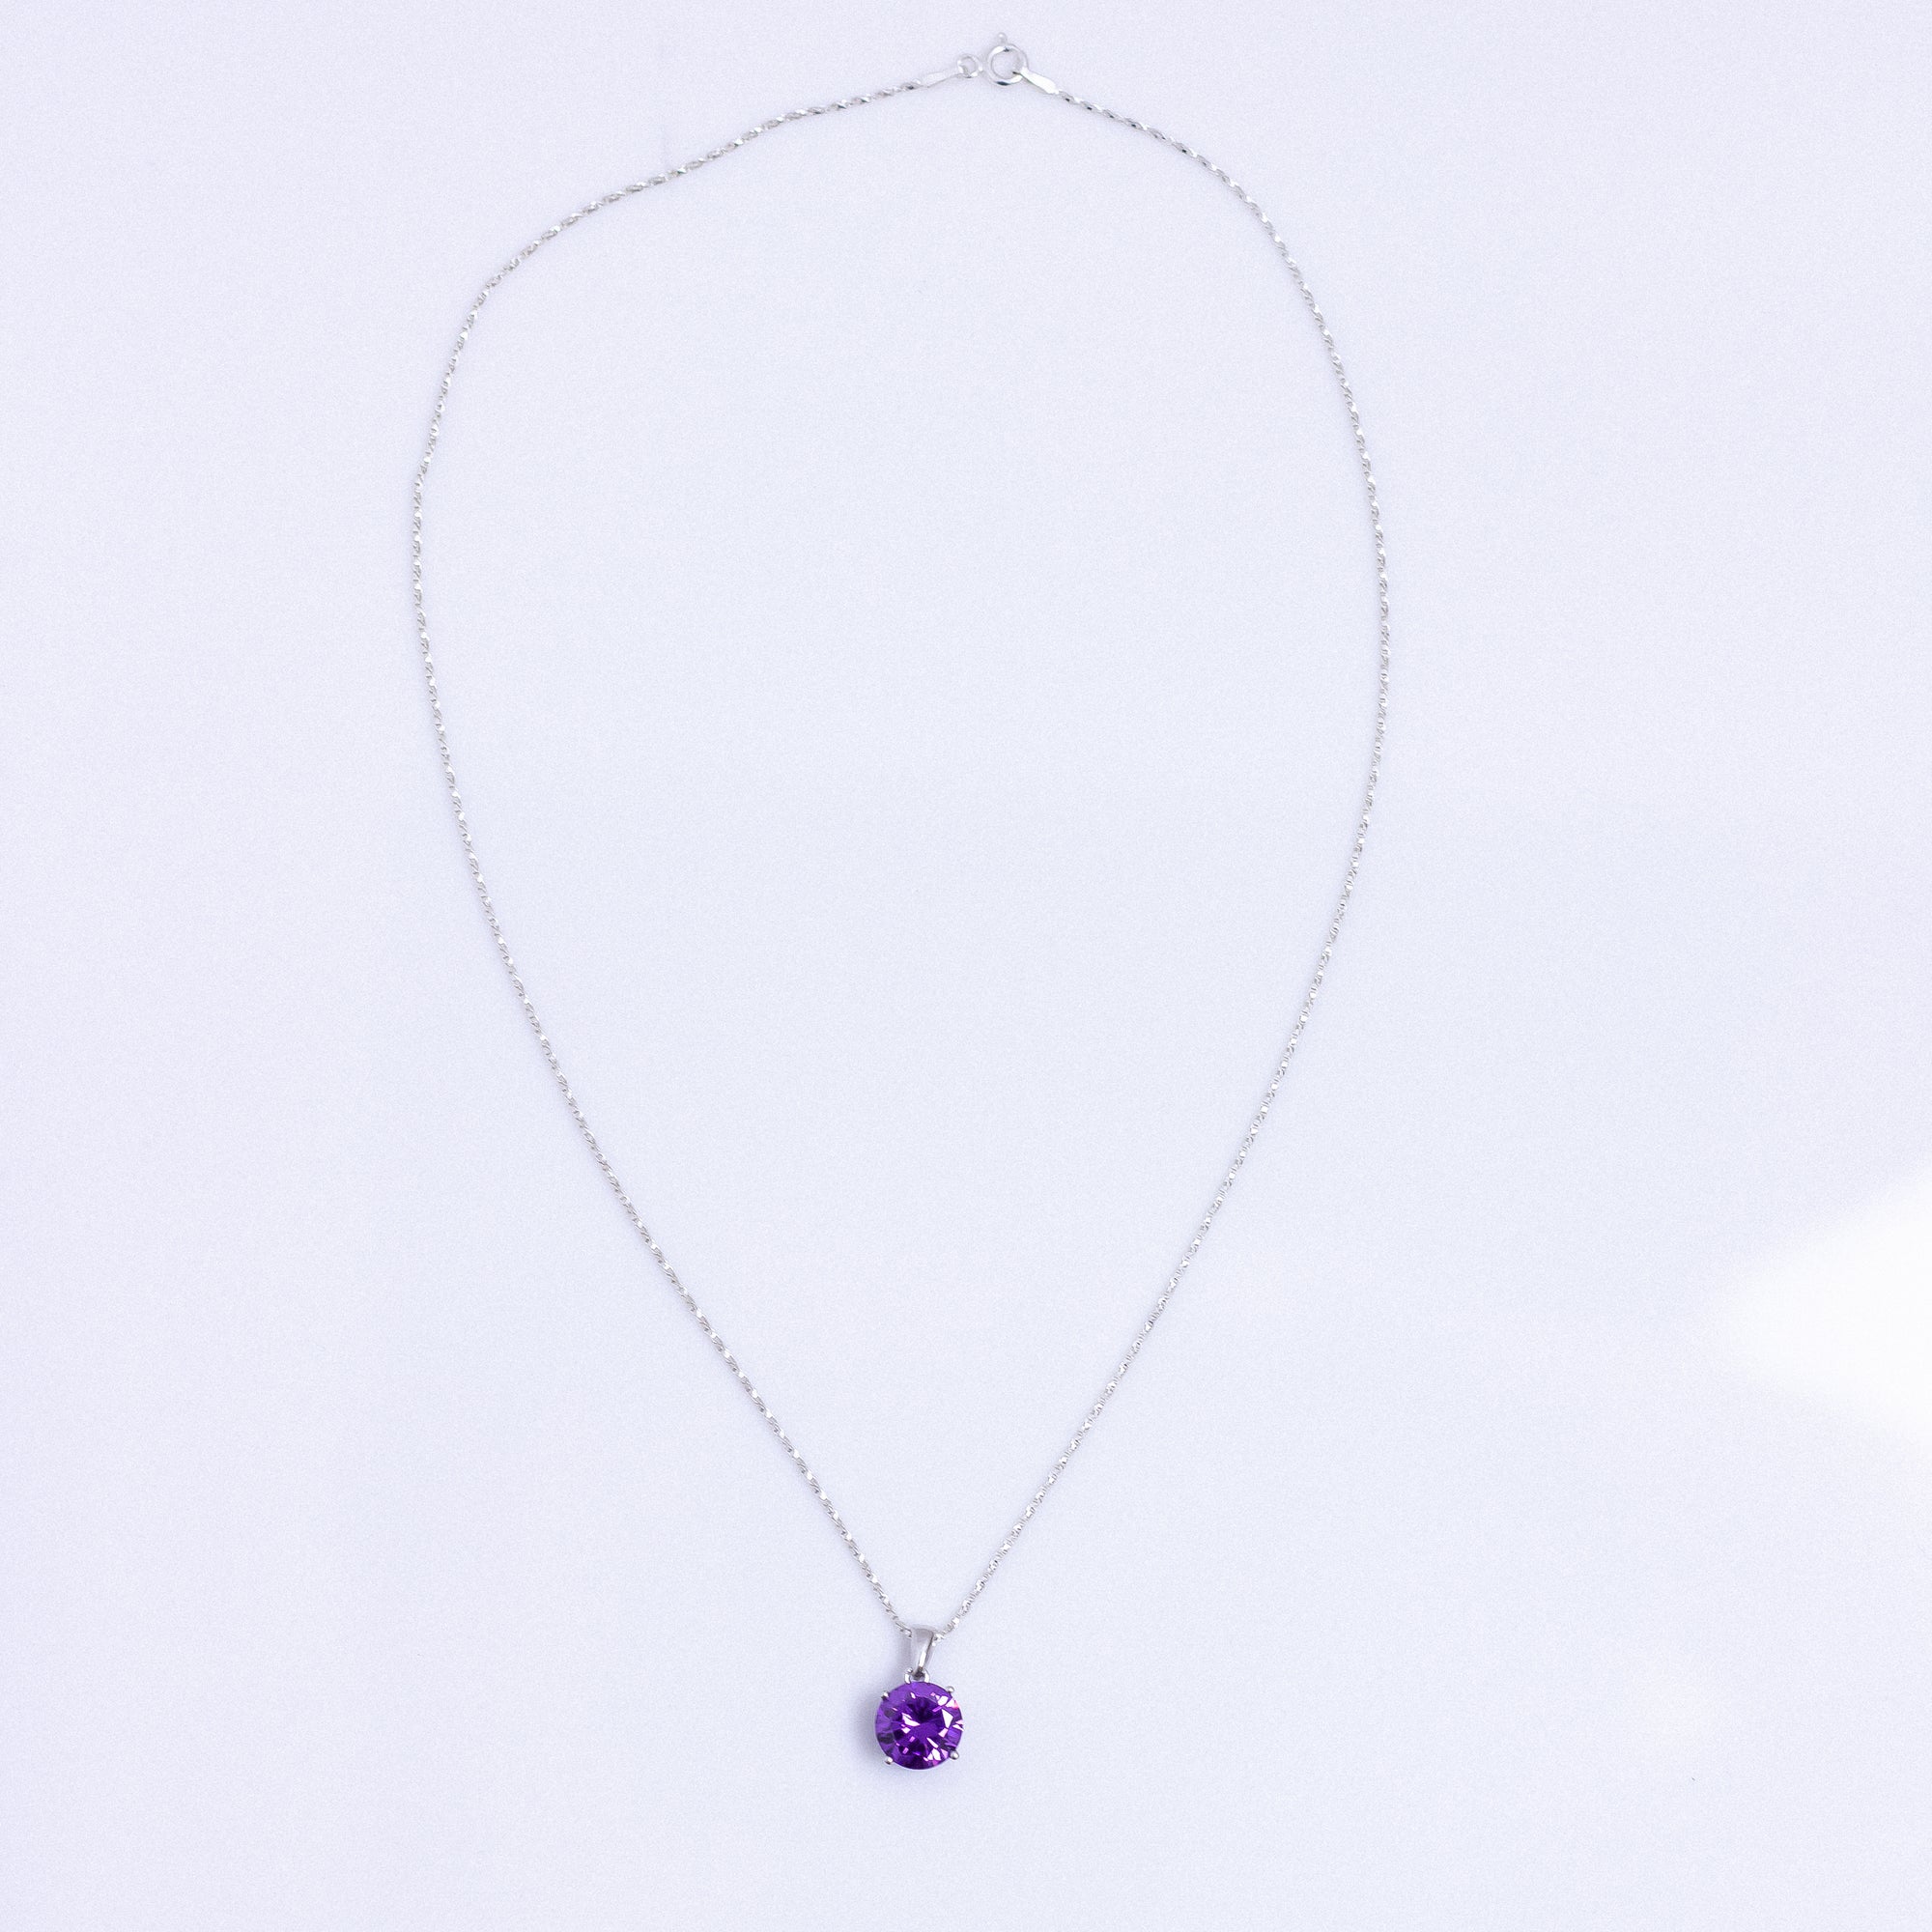 Diamond Cut Amethyst Gemstone Necklaces